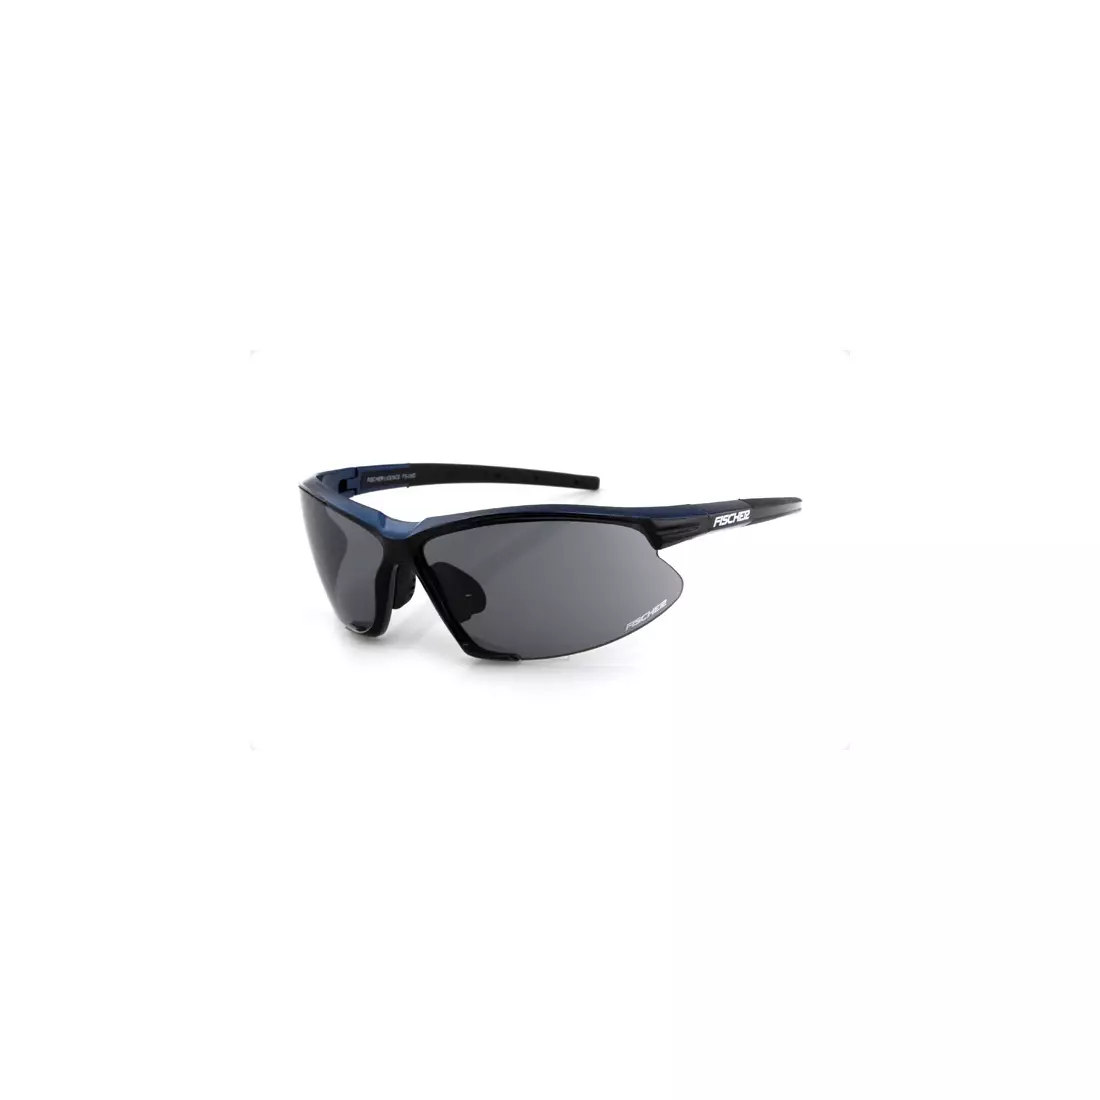 FISCHER - športové okuliare FS-05D - farba: Čierna a modrá